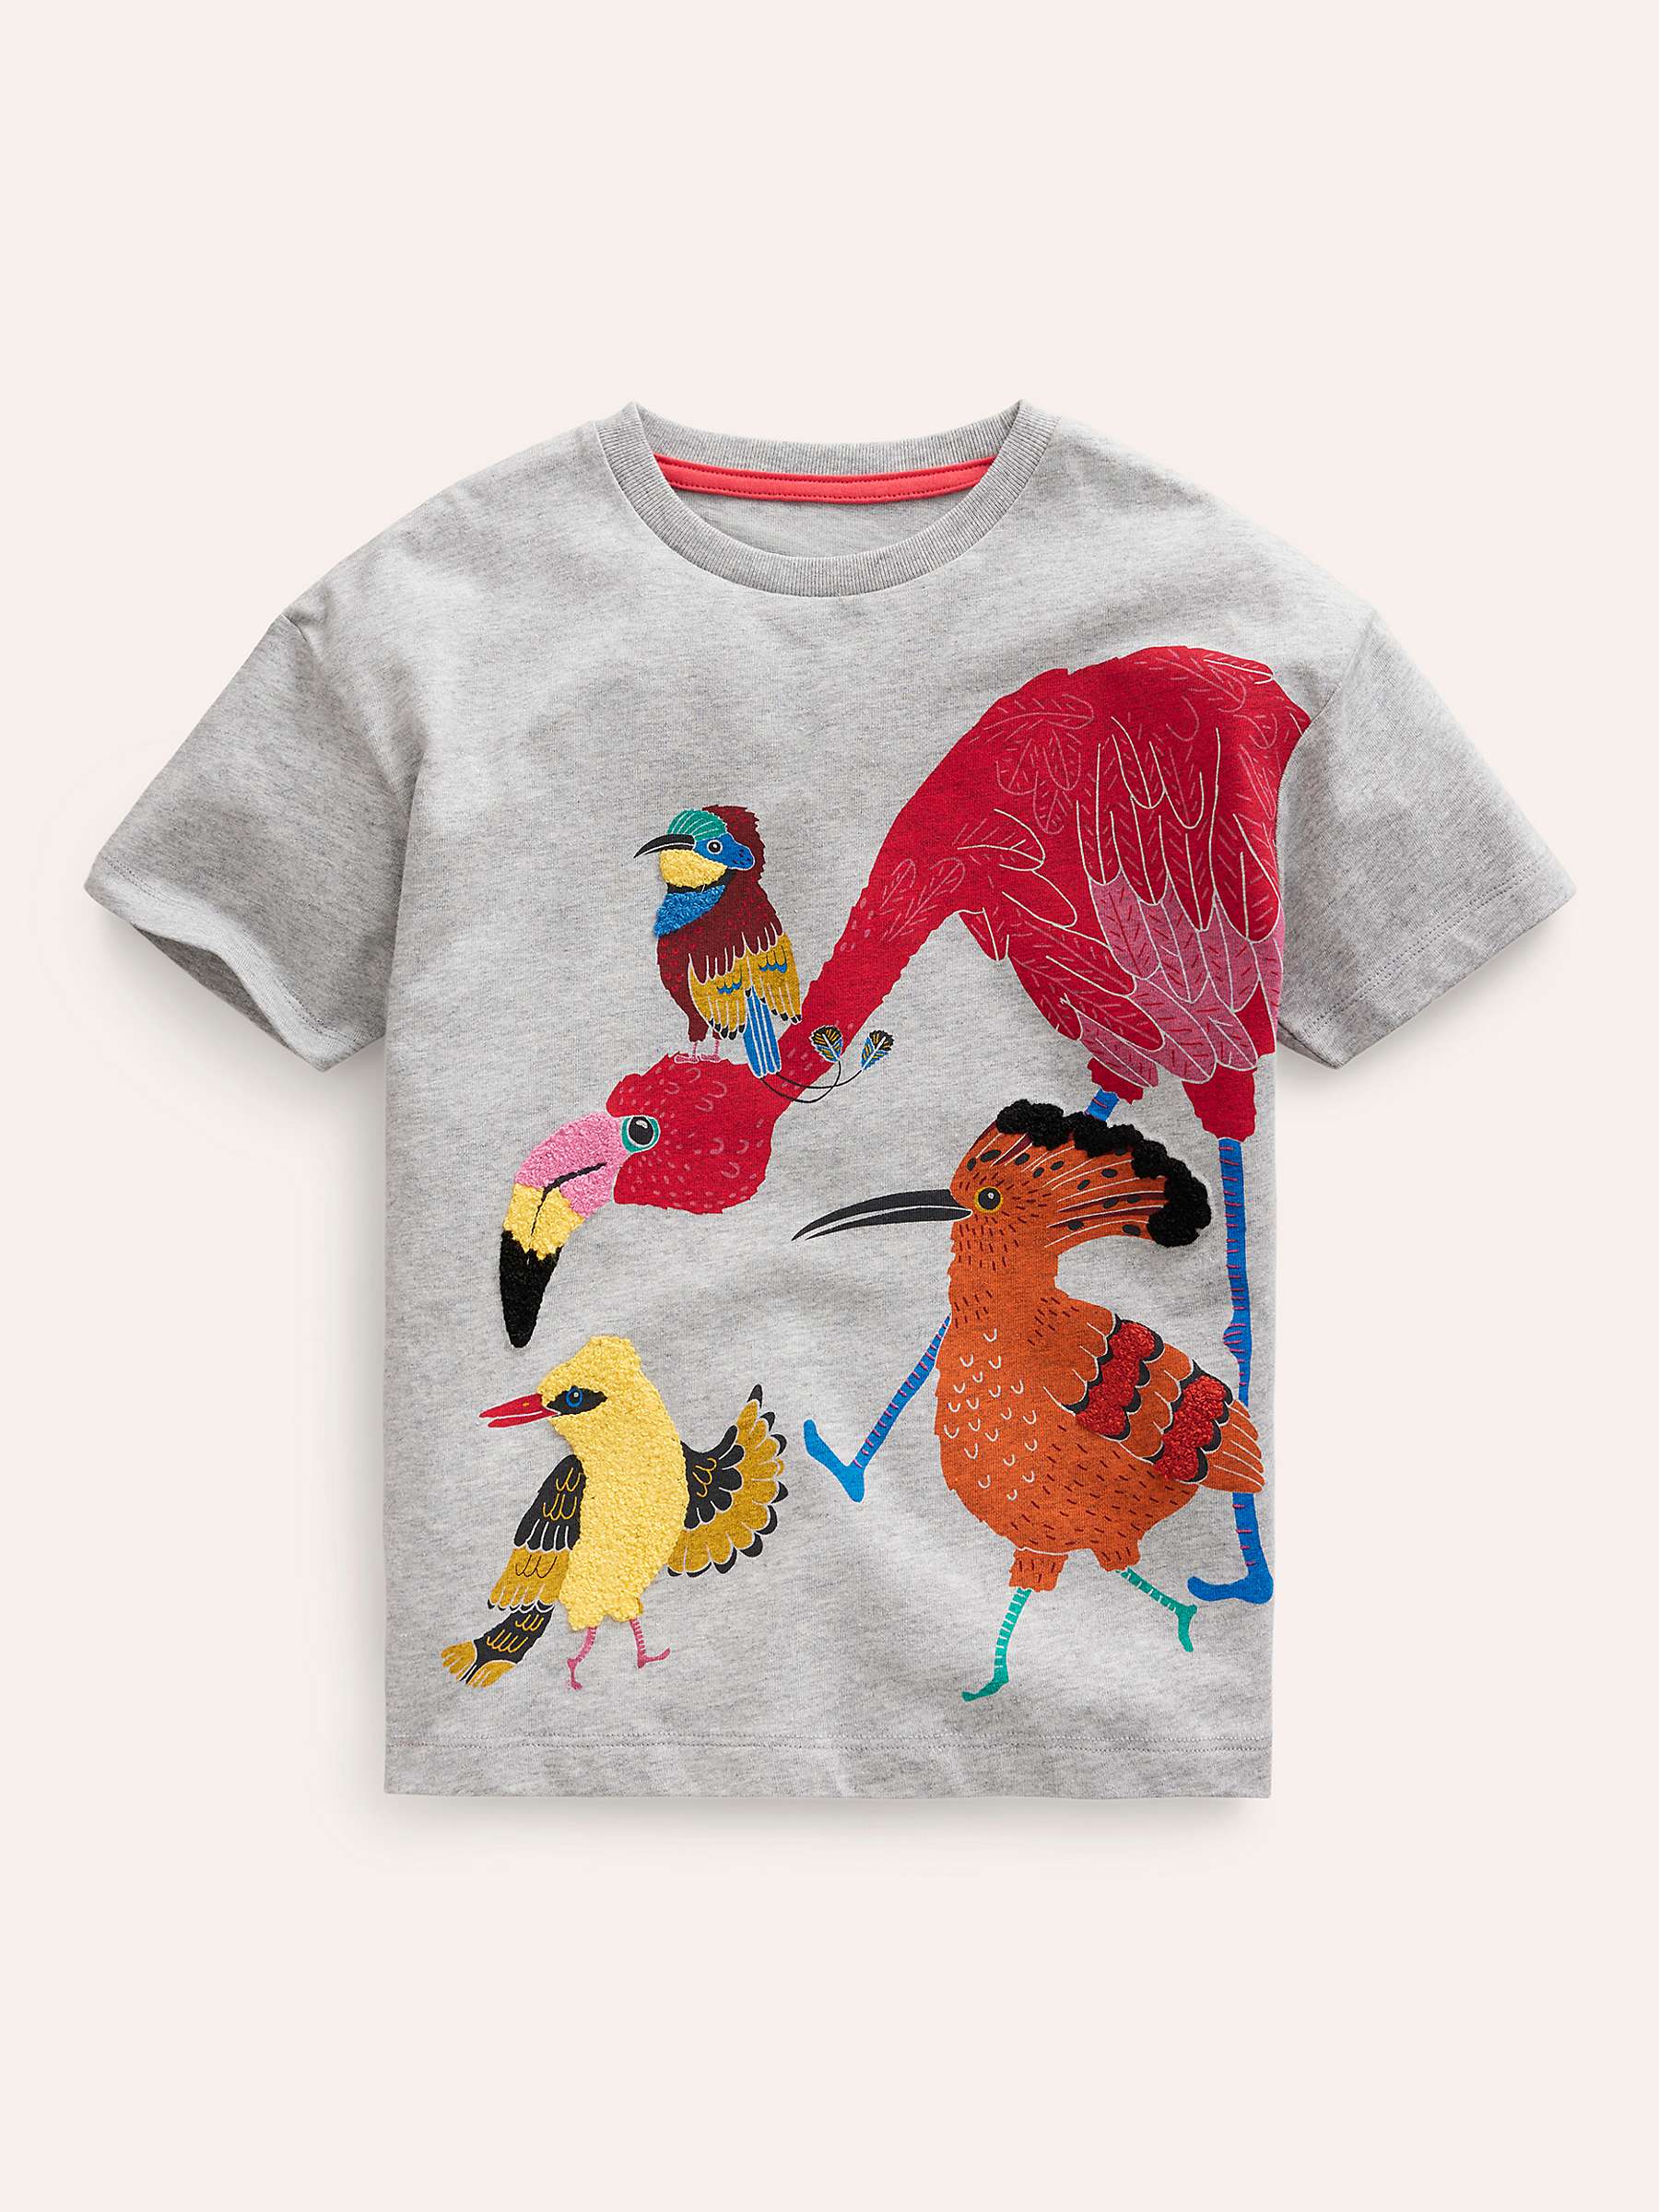 Buy Mini Boden Kids' Joyful Textured T-Shirt, Silver Jungle Birds Online at johnlewis.com